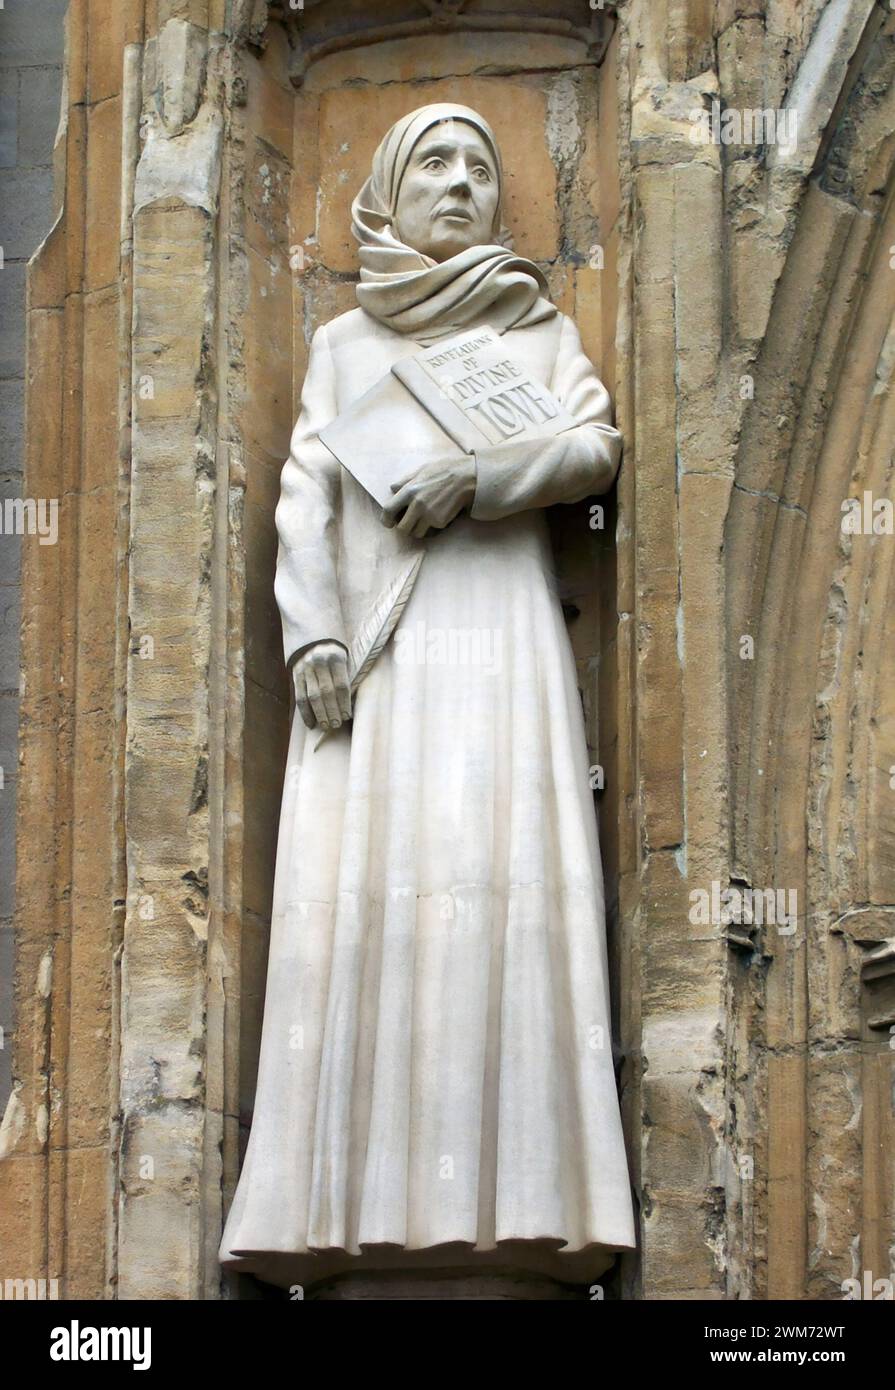 Julien de Norwich. Statue de Julien de Norwich (c. 1343 - après 1416), également connue sous le nom de Juliana de Norwich, la Dame Julian, Dame Julian ou mère Julian, était une ancre anglaise du moyen âge. Ses écrits, maintenant connus sous le nom de révélations de l'amour Divin, sont les premières œuvres en anglais d'une femme (Wikipédia) Banque D'Images